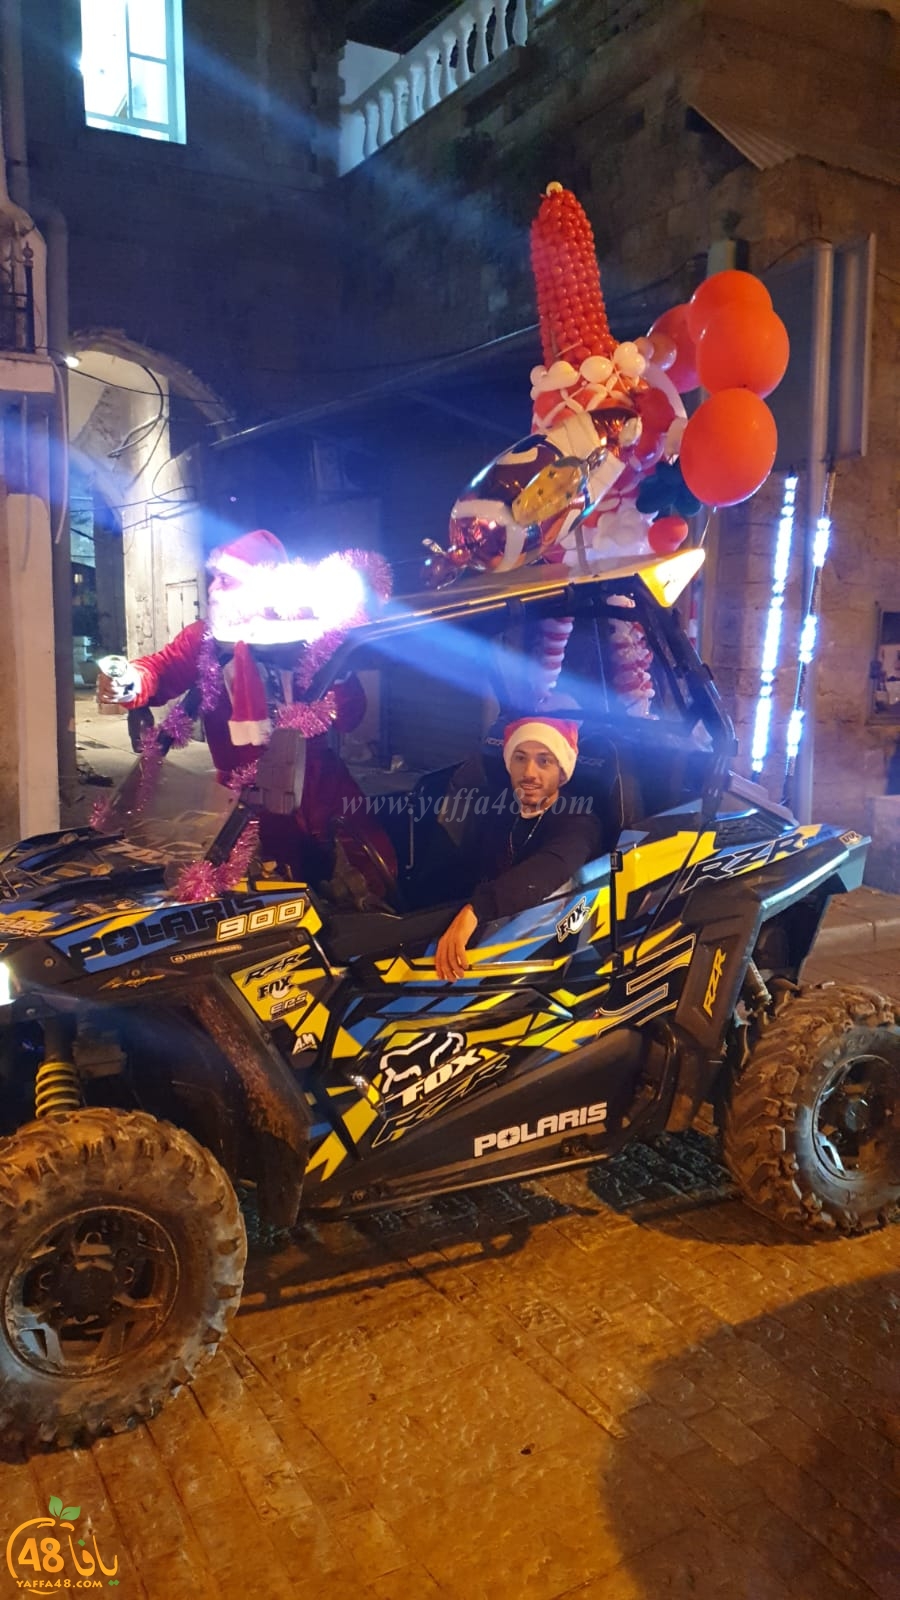  فيديو: قافلة احتفالية تجوب شوارع مدينة يافا بمناسبة عيد الميلاد المجيد 